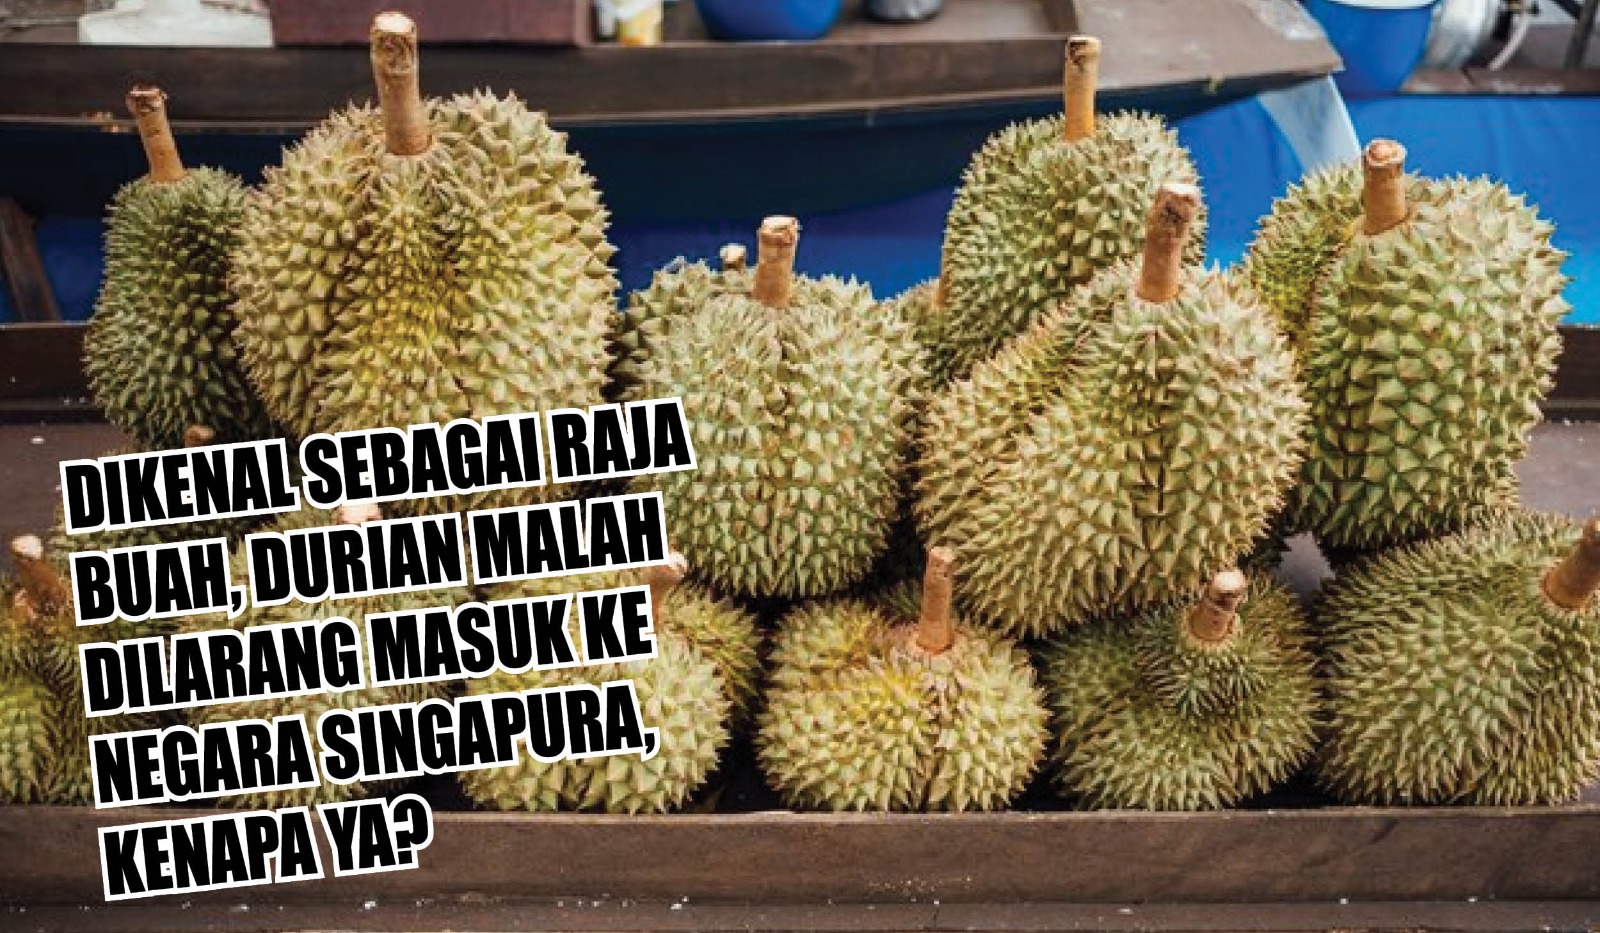 Mengkaget! Dikenal Sebagai Raja Buah, Durian Malah Dilarang Masuk ke Negara Singapura, Kenapa Ya?